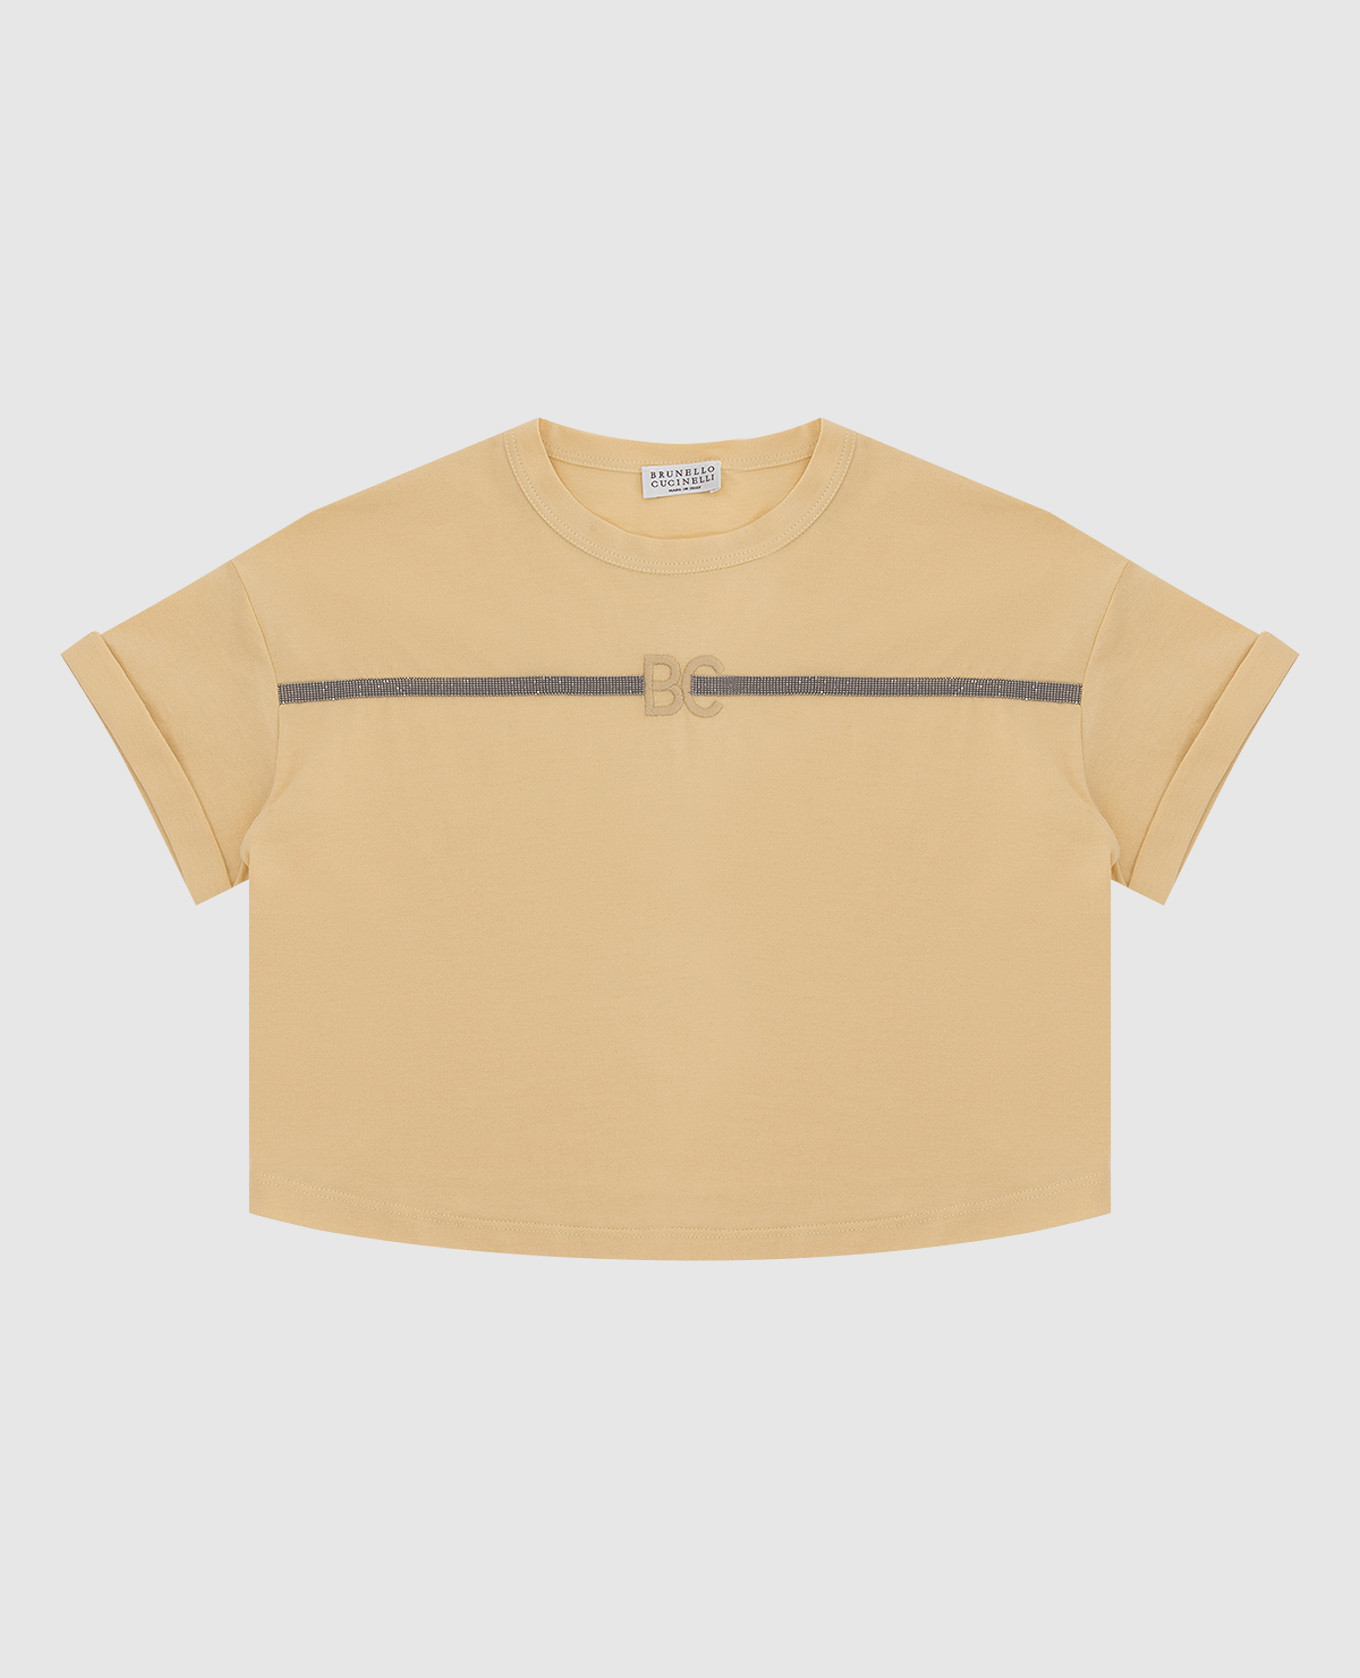 Детская желтая футболка с цепочками и монограммой